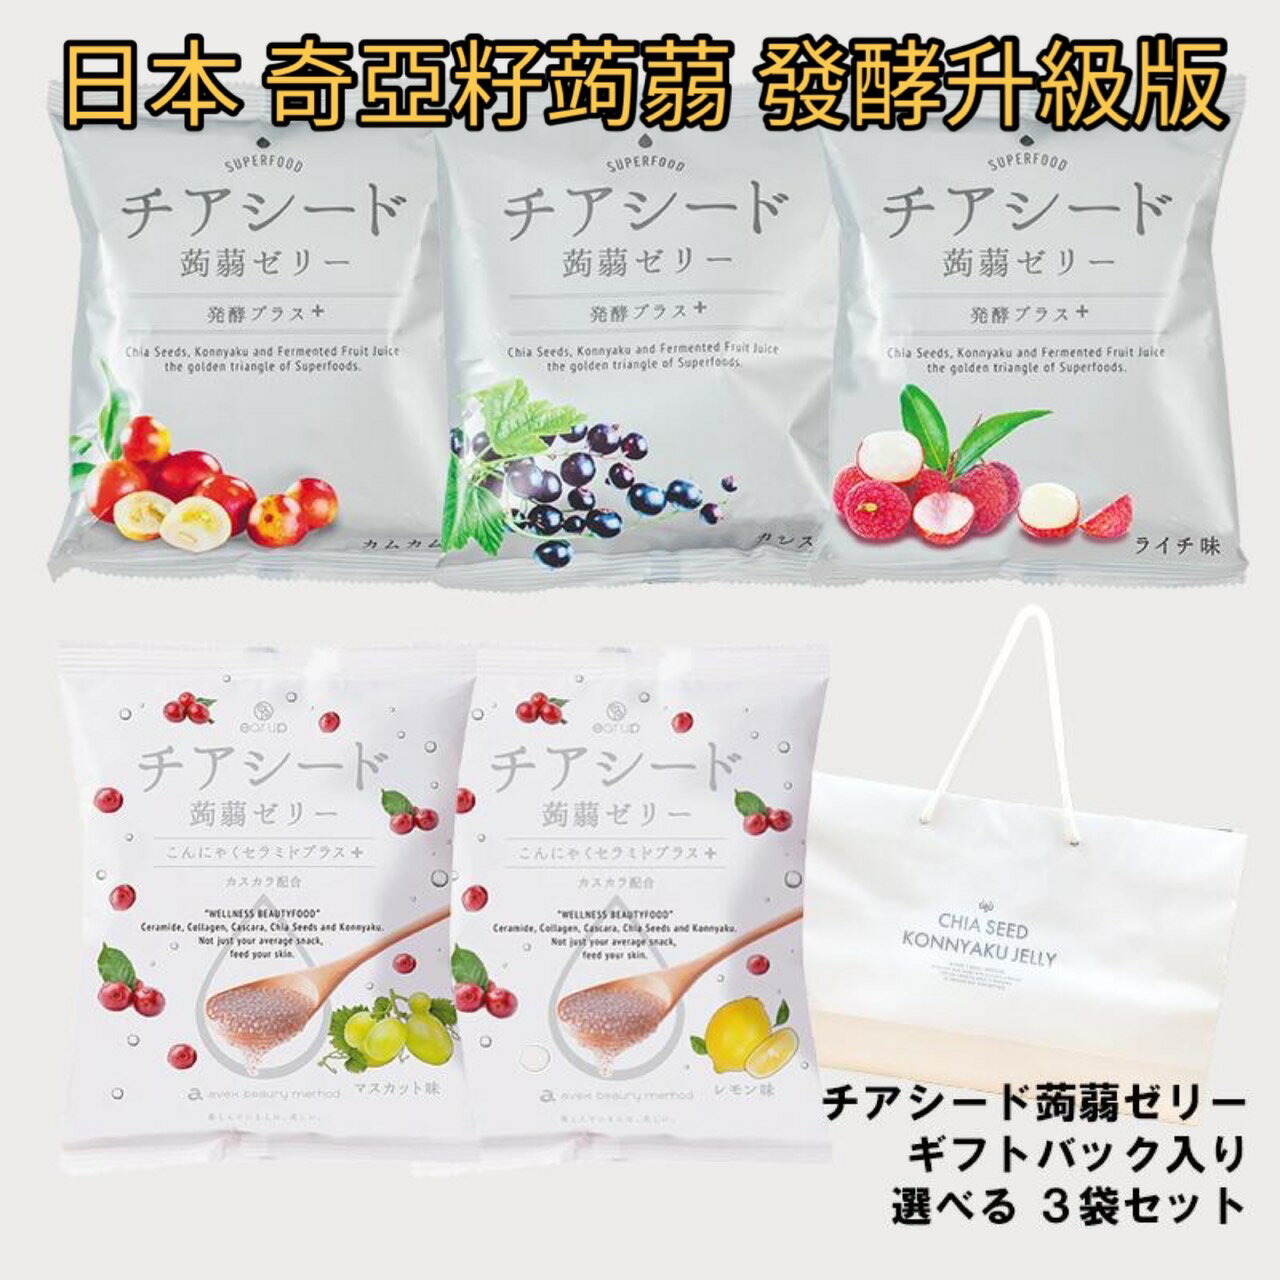 【預購】日本Chia seed jelly 奇亞籽蒟蒻 果凍 低卡零食 發酵升級版 有發票